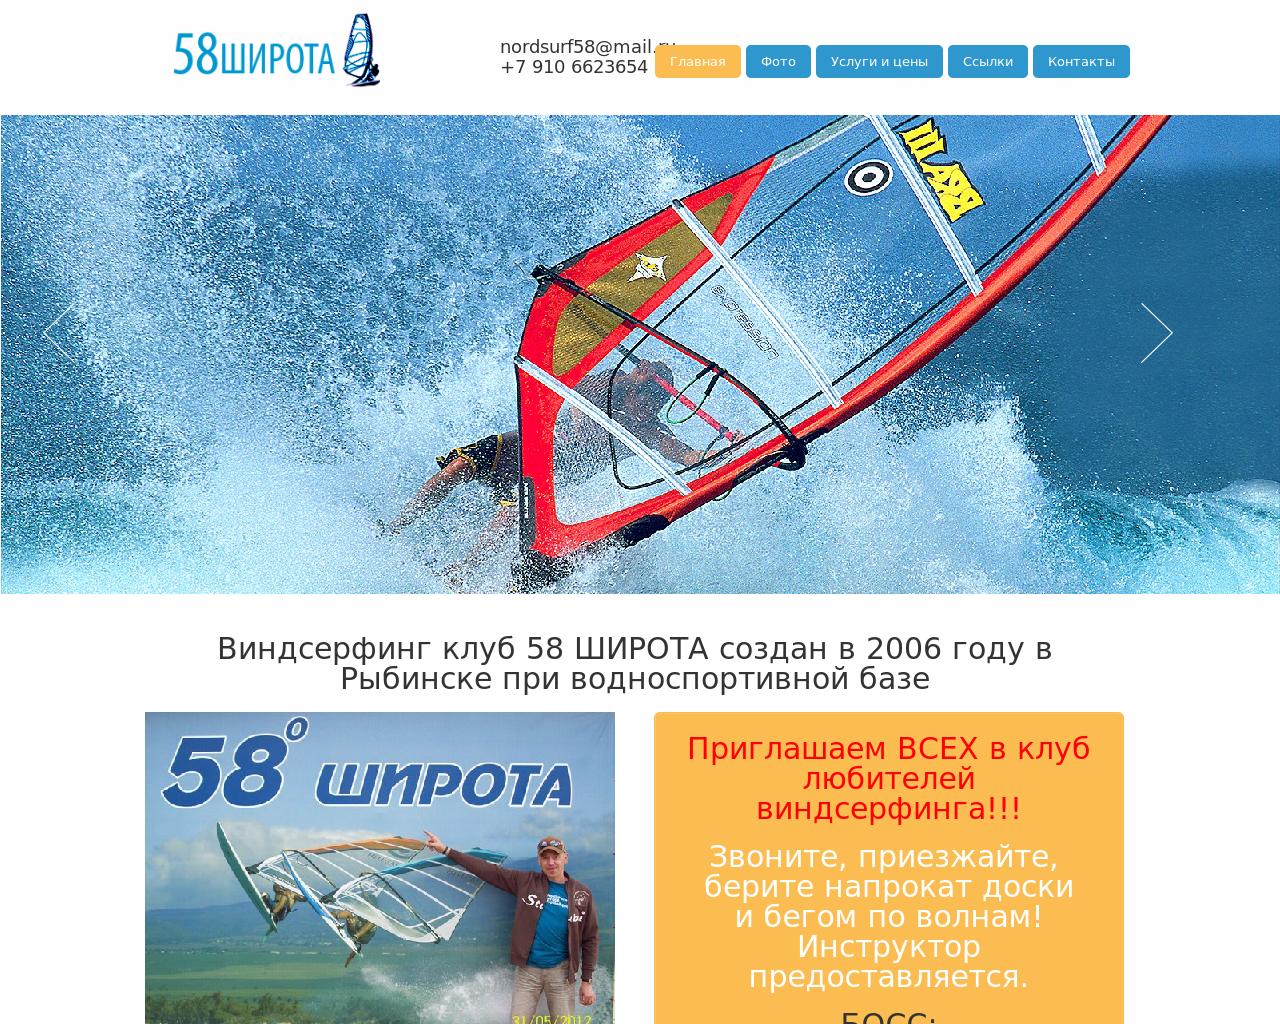 Изображение сайта nordsurf.ru в разрешении 1280x1024